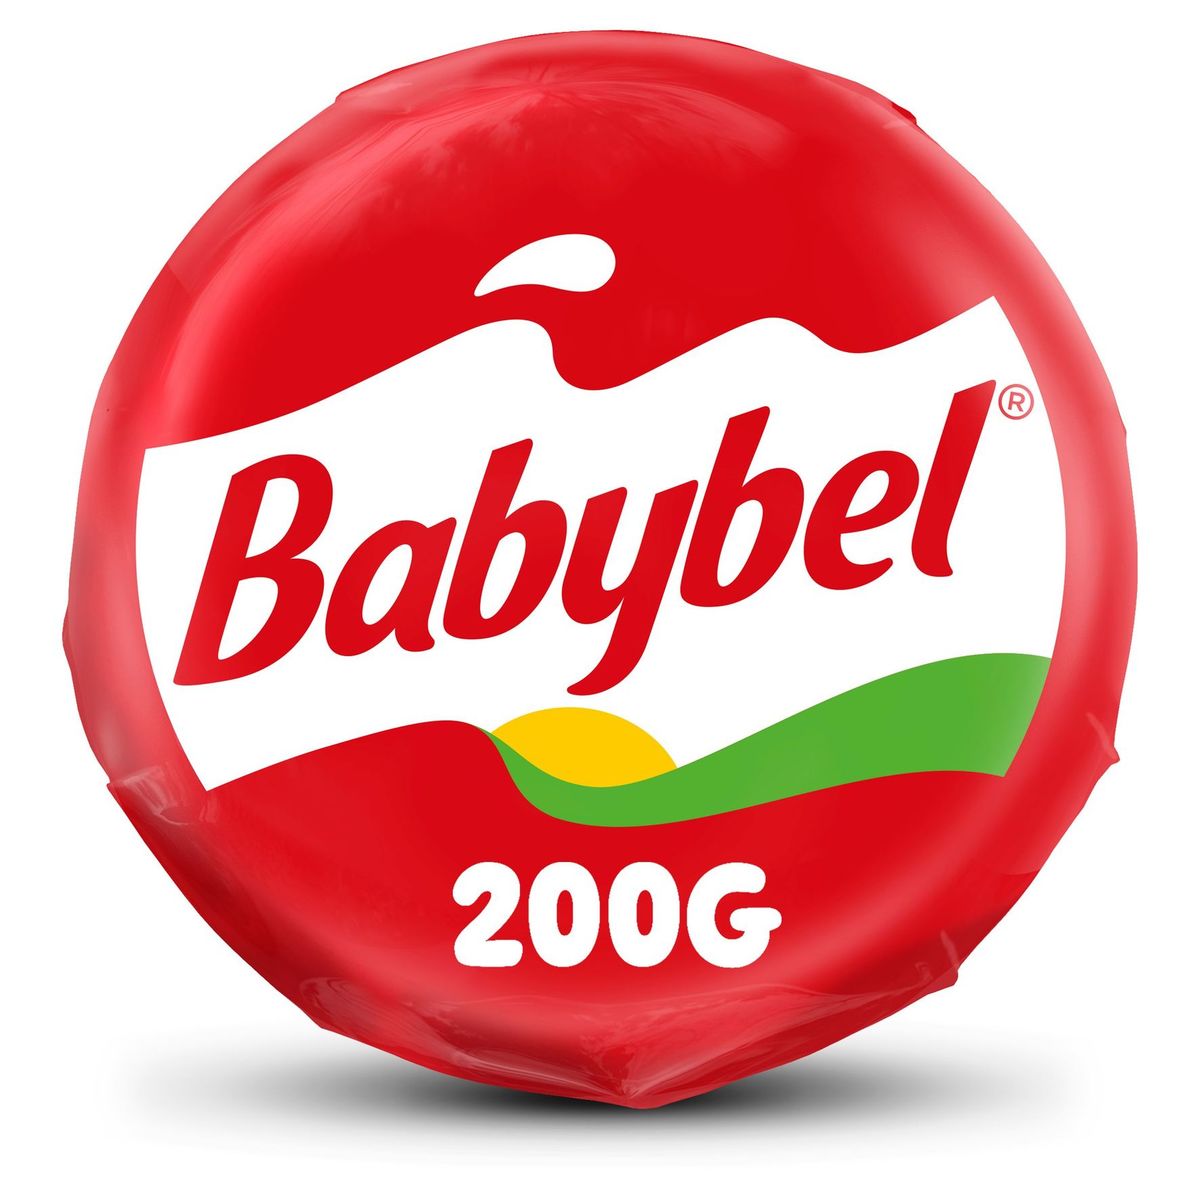 Babybel Fromage Bloc Moelleux & Généreux 200 g